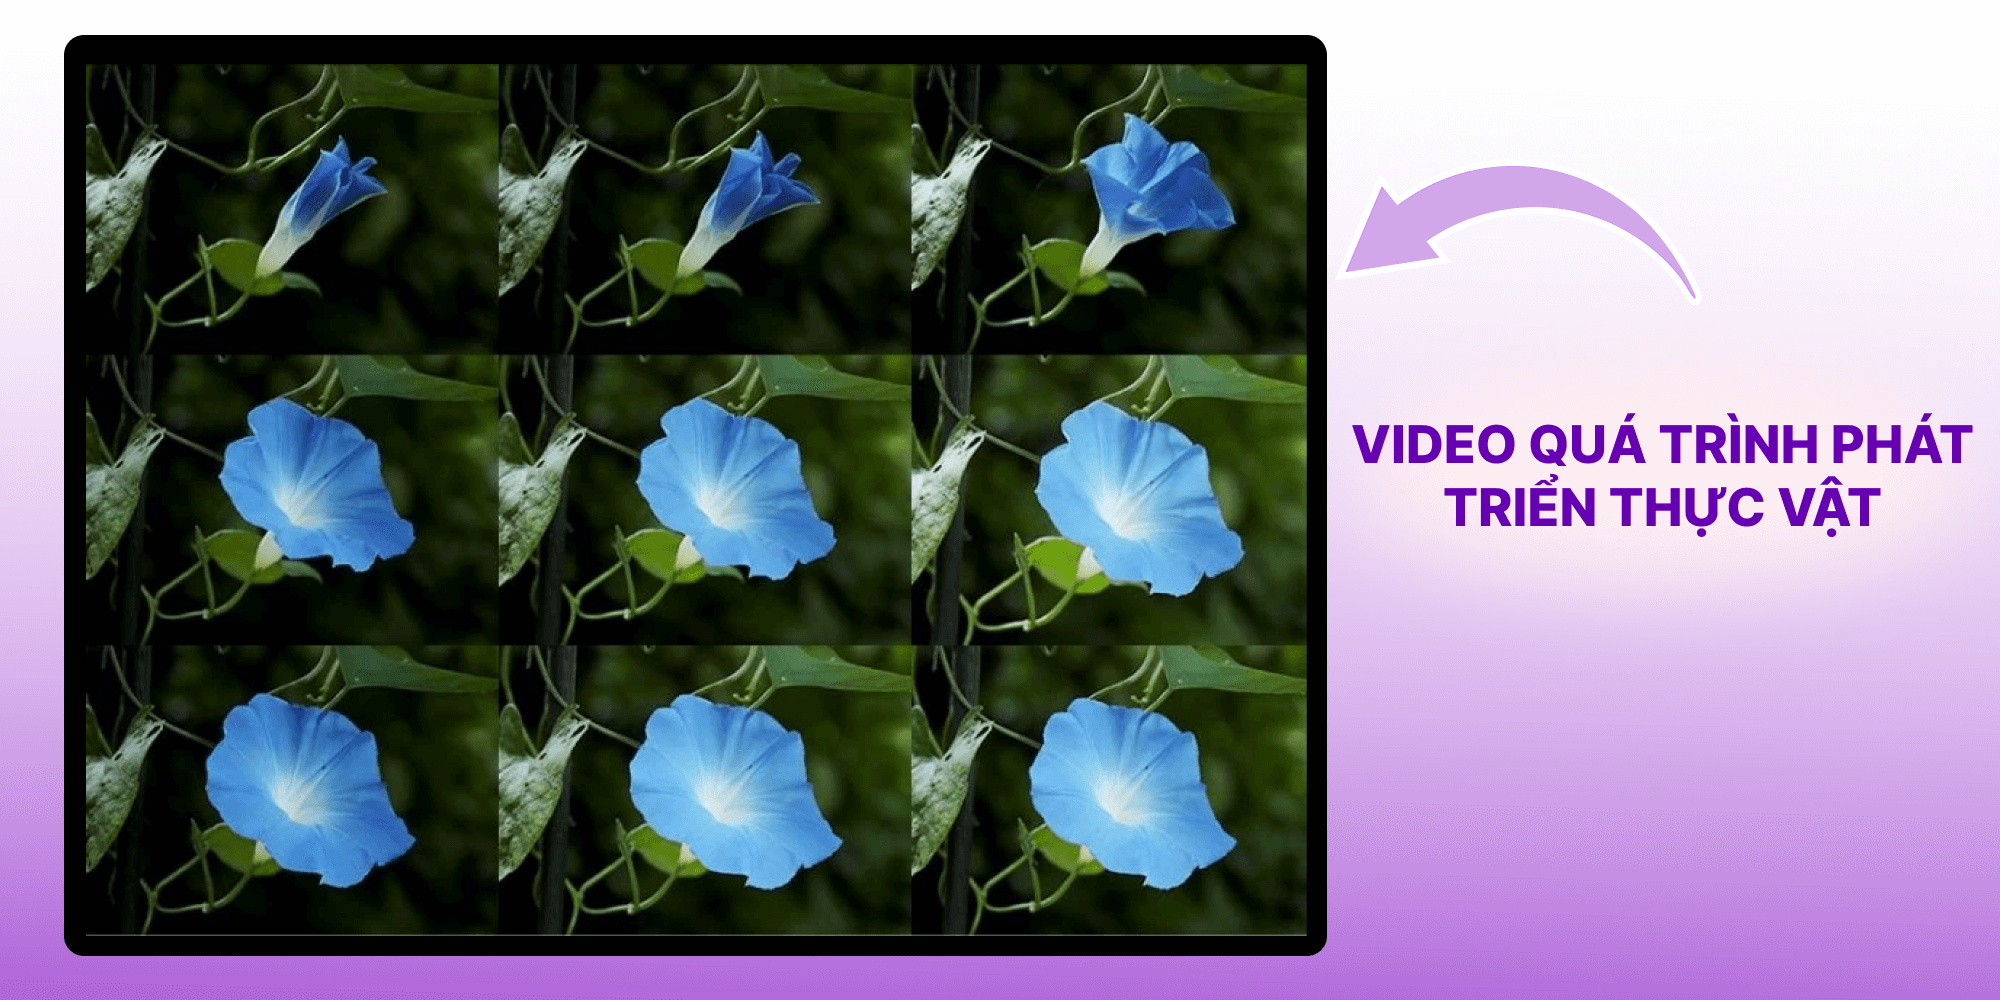 Video quay video tua nhanh về thế giới thực vật